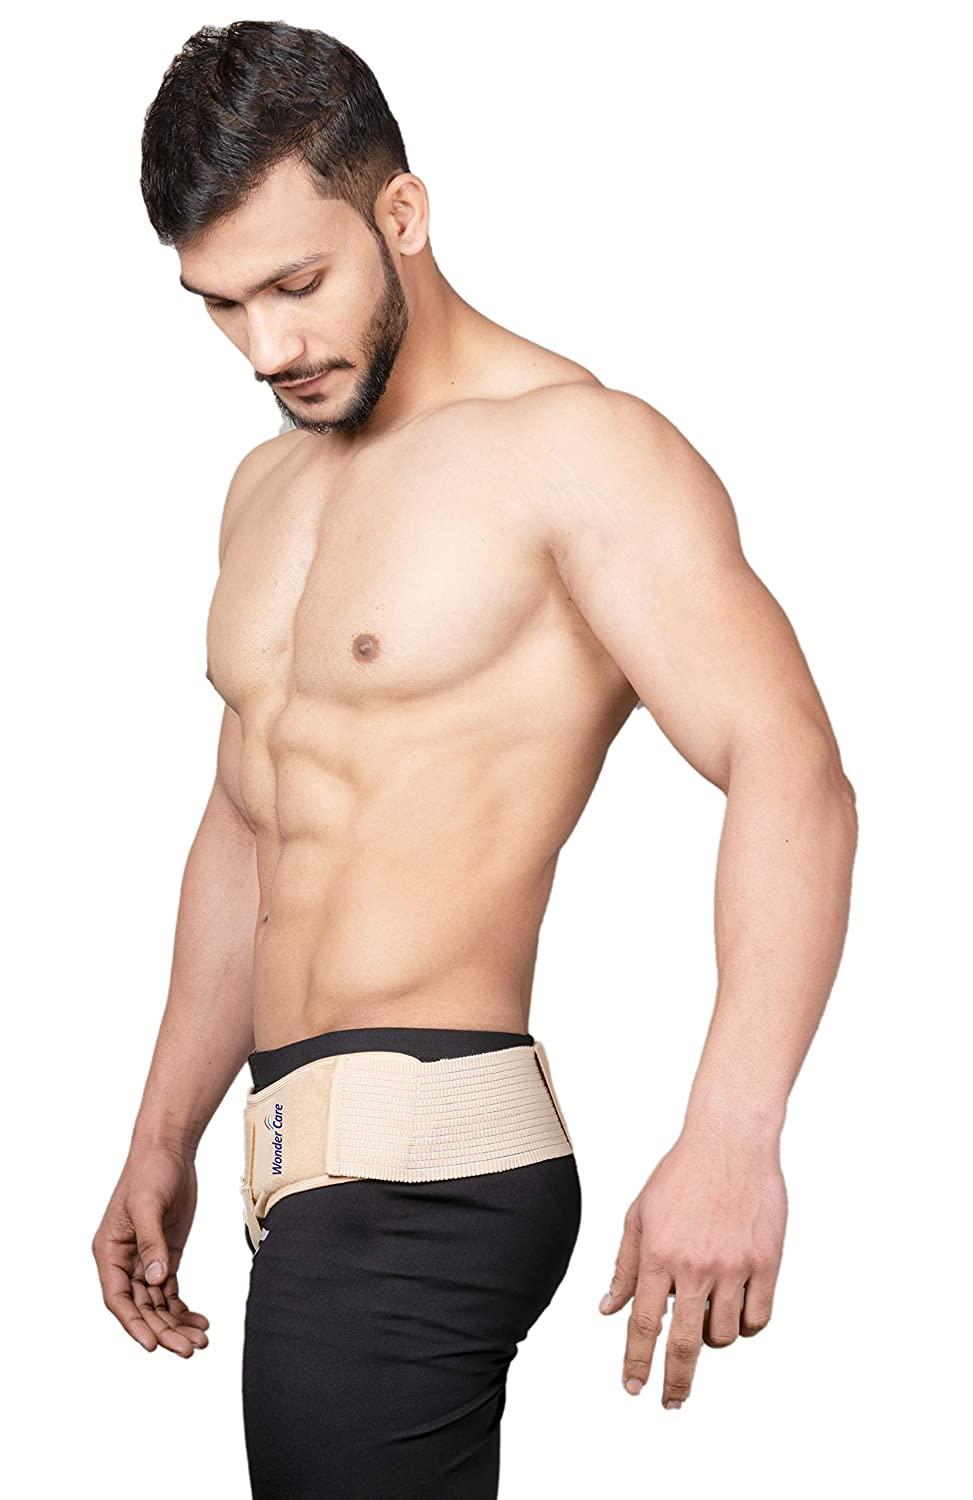 Wonder Care Hernia Belt for Men - Groin Hernia Support for Men 2 Removable  Compression Pads Adjustable